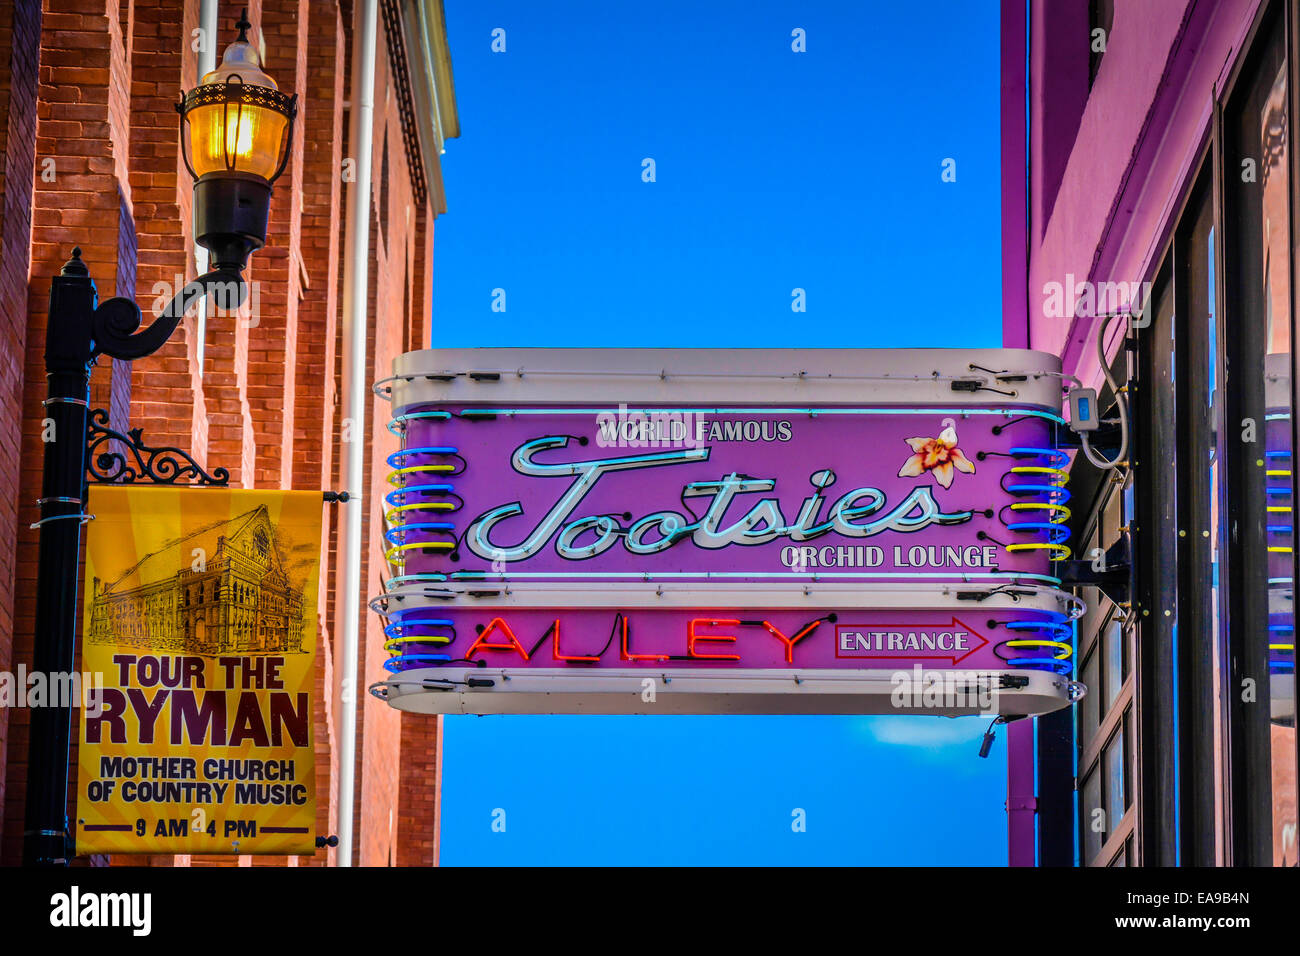 Zeichen für Gasse Eingang zum weltberühmten Tootsies Orchid Lounge von Sternen durch die Hintertür des Ryman Grand Ole Opry, Nashville, TN Stockfoto